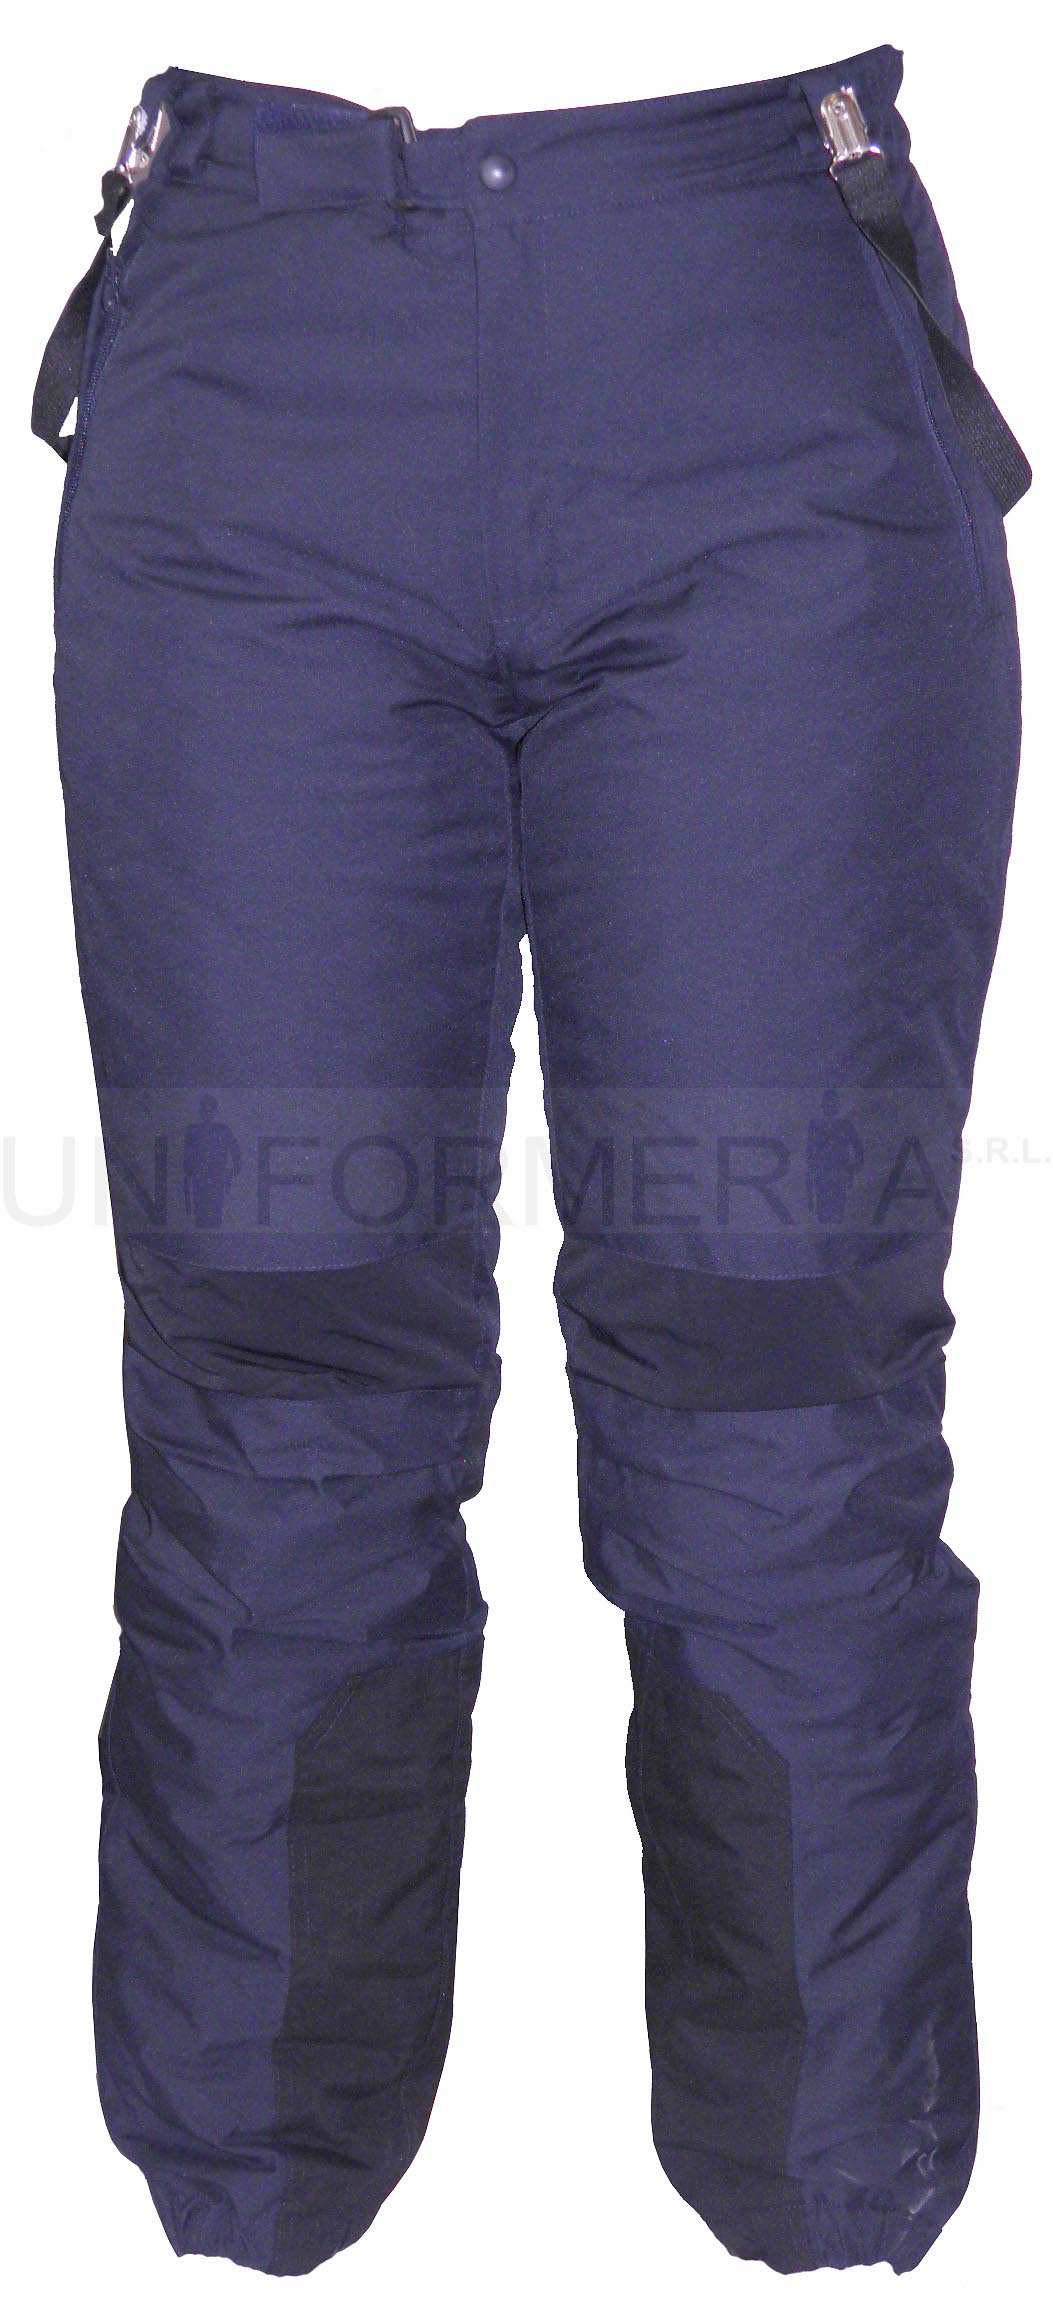 Sopra pantaloni impermeabili cerniera su tutta la gamba Coperta da banda rifrangente Tessuto PTFE Calzoni da sci con